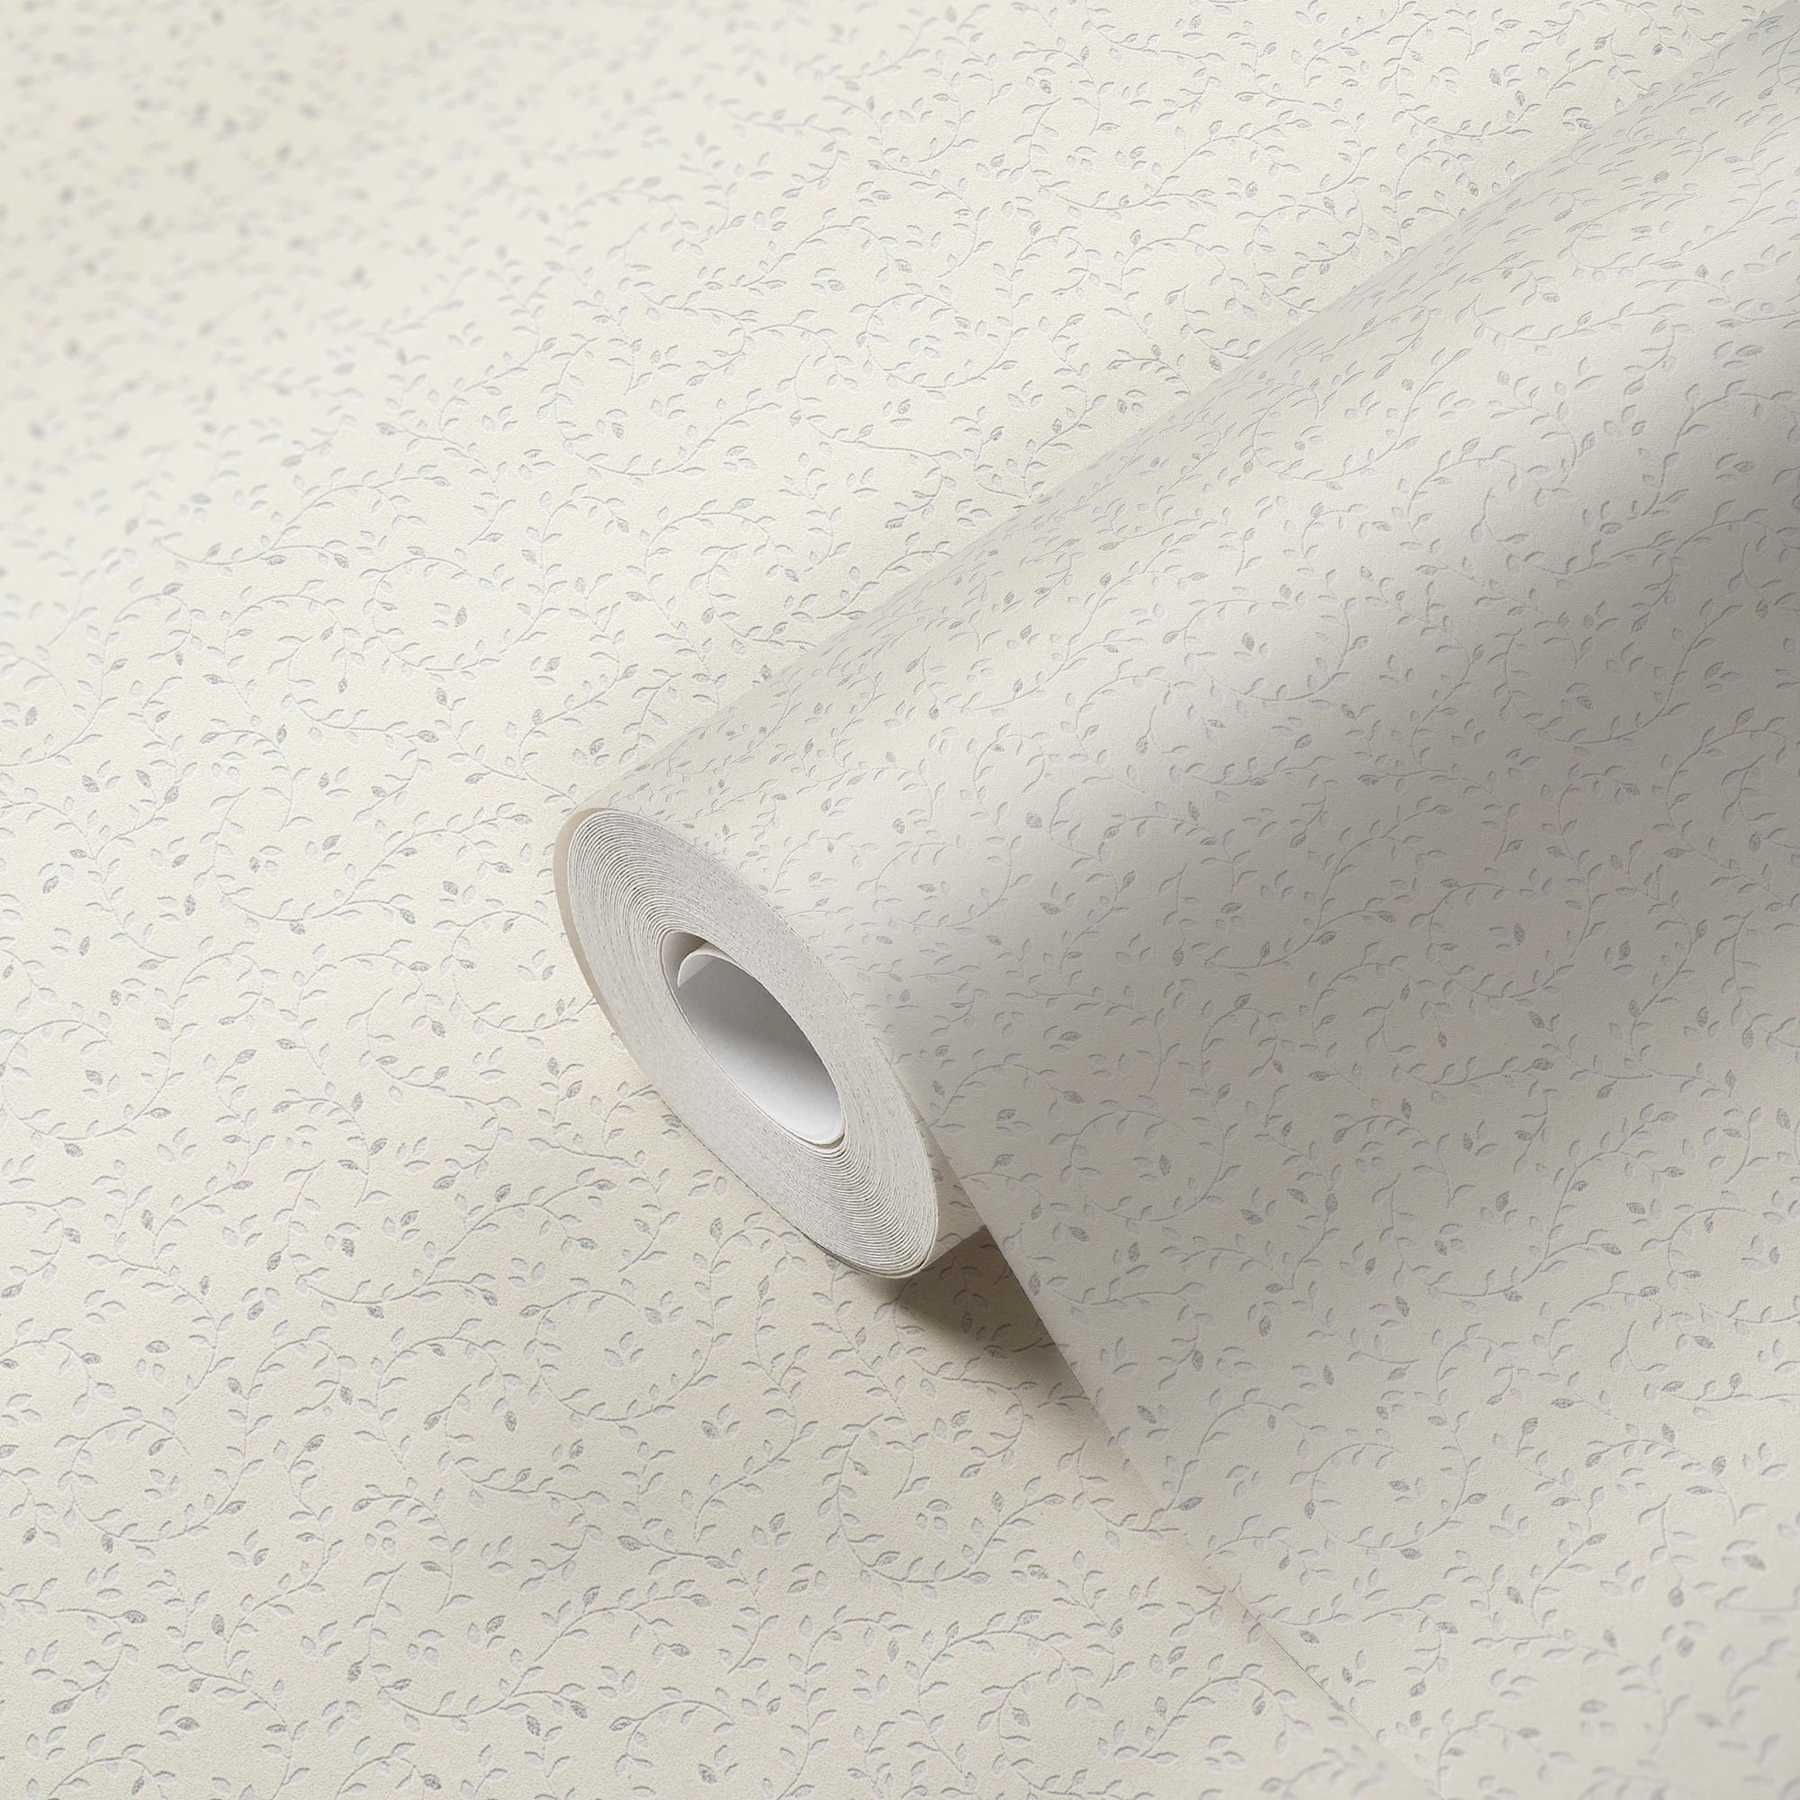             papel pintado con motivo de hojas de filigrana, texturizado - metálico, blanco
        